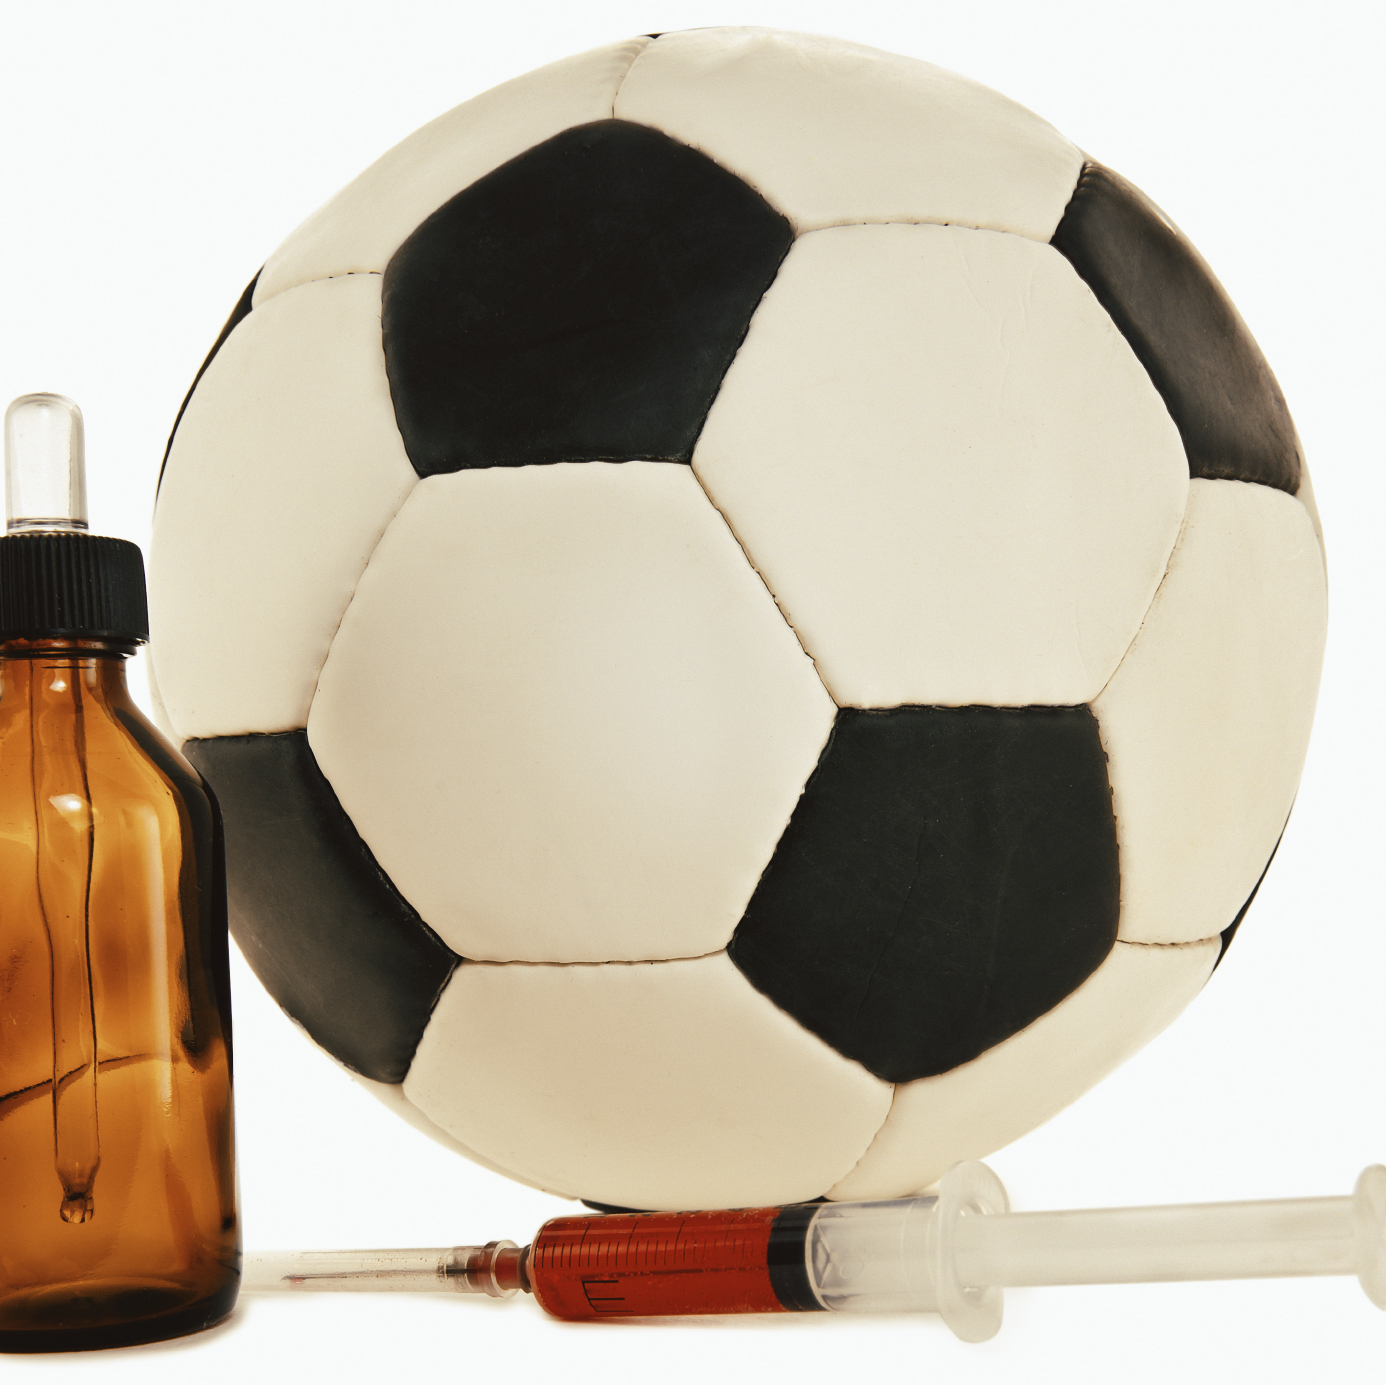 Fútbol y dóping